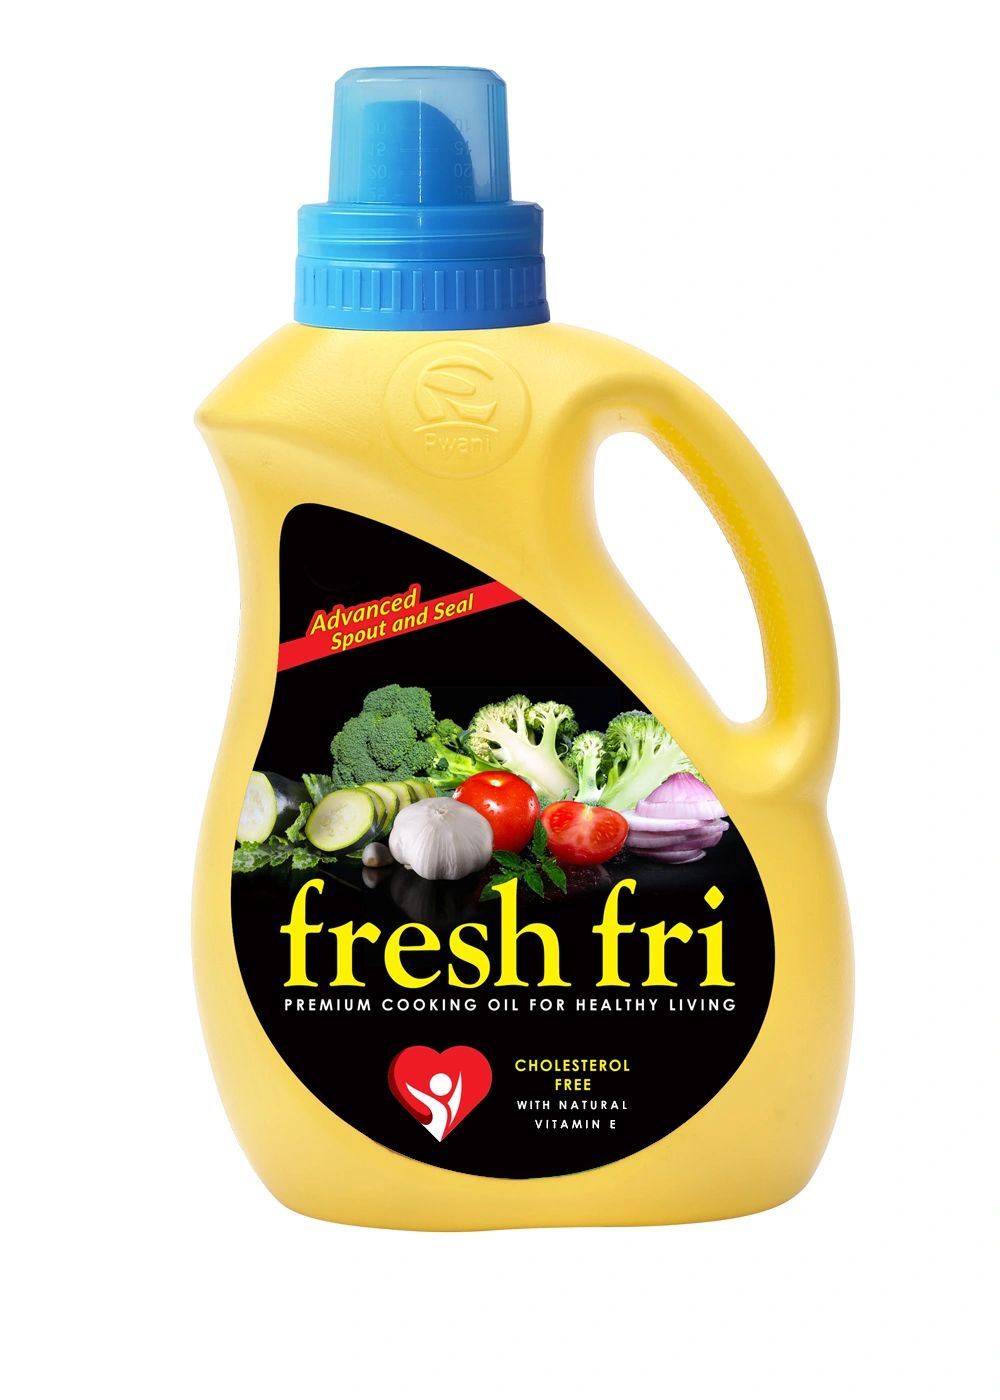 Fresh Fri vegetable oil